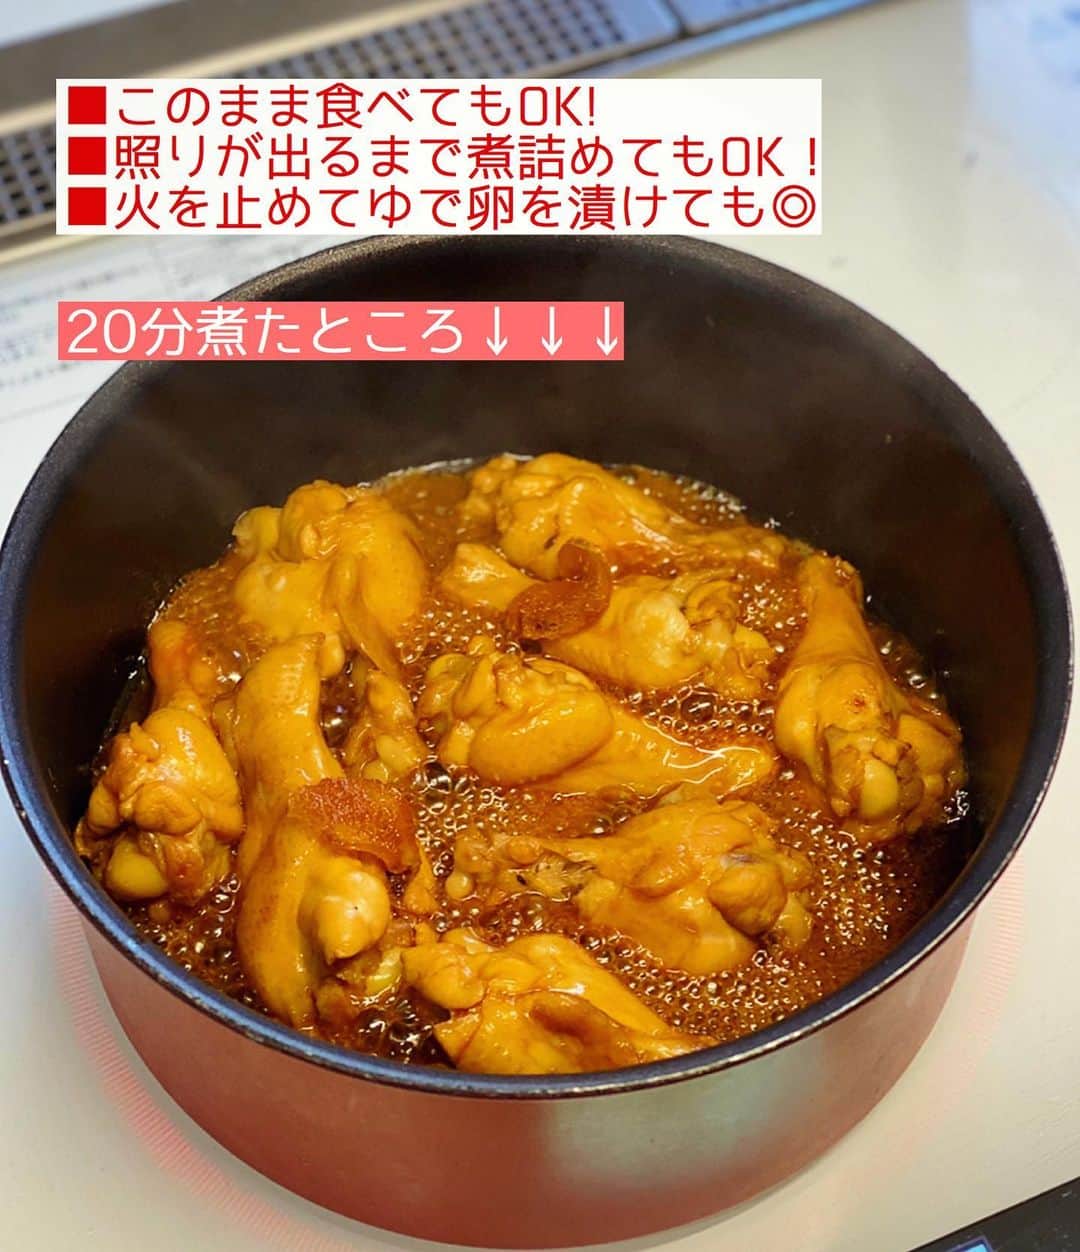 Mizuki【料理ブロガー・簡単レシピ】さんのインスタグラム写真 - (Mizuki【料理ブロガー・簡単レシピ】Instagram)「・﻿ 【#レシピ 】ーーーーーーーー﻿ ♡手羽元のほったらかし煮♡﻿ (2品献立提案あり)﻿ ーーーーーーーーーーーーーー﻿ ﻿ ﻿ ﻿ おはようございます(*^^*)﻿ ﻿ 今日ご紹介させていただくのは﻿ \手羽元のほったらかし煮/﻿ お鍋に材料全部入れて煮るだけの﻿ 超簡単レシピです(*´艸`)﻿ ﻿ 煮汁にお酢を加えることで﻿ 味に奥行きが出てお肉はほろほろに♡﻿ こってり甘辛い味付けで﻿ ごはんにもお酒にも合いますよ〜♩﻿ ﻿ ポイントにアレンジも書きましたので﻿ よかったらお試し下さいね(*^^*)﻿ ﻿ ﻿ ﻿ ＿＿＿＿＿＿＿＿＿＿＿＿＿＿＿＿＿＿＿＿﻿ 【作りやすい量】﻿ 手羽元...9〜10本﻿ 生姜(薄切り)...1/2かけ﻿ 水・醤油・酒...各大3﻿ 砂糖...大2﻿ 酢・みりん...各大1﻿ (好みで)ごま...適量﻿ ﻿ 1.鍋にごま以外の材料を入れて中火にかける。煮立ったらアルミホイルで落とし蓋をして、弱めの中火で18〜20分煮る。(途中1回混ぜる)﻿ 2.器に盛ってごまを振る。﻿ ￣￣￣￣￣￣￣￣￣￣￣￣￣￣￣￣￣￣￣￣﻿ ﻿ ﻿ ﻿ 《ポイント》﻿ ♦︎レシピ通りに煮込んだ後、照りが出るまで更に煮詰めても◎﻿ ♦︎火を止めた後、残った煮汁にゆで卵を漬けておくのもおすすめです♩﻿ ♦︎冷蔵庫で3〜4日作り置きもOK♩﻿ ♦︎直径20cmの鍋を使用しています♩﻿ ﻿ ﻿ ﻿ ﻿ ﻿ ﻿ ﻿ ＿＿＿＿＿＿＿＿＿＿＿＿＿＿＿＿﻿ 🥣🥣🥣 2品献立提案 🥣🥣🥣﻿ ￣￣￣￣￣￣￣￣￣￣￣￣￣￣￣￣﻿ 【合間に作れるおすすめ副菜】﻿ >長芋と水菜のじゃこサラダ(P.99)﻿ >春雨サラダ(P.100)﻿ (#Mizukiの2品献立 より)﻿ ﻿ 【献立の段取り】﻿ メインを煮ている間に副菜を作る🥢﻿ ￣￣￣￣￣￣￣￣￣￣￣￣￣￣￣￣﻿ ﻿ ﻿ ﻿ ﻿ ﻿ ﻿ ⭐️発売中⭐️3刷重版が決まりました😭﻿ 本当にありがとうございます(涙)﻿ _____________________________________﻿ \15分でいただきます/﻿ 📕#Mizukiの2品献立 📕﻿ (9月24日発売・マガジンハウス)﻿ ￣￣￣￣￣￣￣￣￣￣￣￣￣￣￣￣￣﻿ ﻿ 忙しい私たちには﻿ 2品くらいがちょうどいい！﻿ 『しんどくない献立、考えました』﻿ ￣￣￣￣￣￣￣￣￣￣￣￣￣￣￣￣﻿ ﻿ ーーーーーPART.1 ーーーーー﻿ 【Mizukiのお墨つき！２品献立ベスト10】﻿ 約15分でできる10献立をご紹介！﻿ メインは全部フライパン﻿ 副菜はレンチンor混ぜるだけ♡﻿ ﻿ ーーーーーPART.2 ーーーーー﻿ 【フライパンひとつ！今夜のメインおかず】﻿ 献立の主役になる肉や魚のおかず50品！﻿ Part3の副菜と組み合わせれば﻿ 献立のバリエーションが広がりますよ♩﻿ ﻿ ーーーーー PART.3 ーーーーー﻿ 【合間に作れる！ 野菜別かんたん副菜】﻿ レンチンor和えるだけの副菜レシピを﻿ 素材別にたっぷり収録♩﻿ ﻿ ーーーーー番外編ーーーーー﻿ 【ひとつで満足！ご飯＆麺】﻿ 【具だくさん！おかずスープ】﻿ 【オーブンいらずのおやつレシピ】﻿ ￣￣￣￣￣￣￣￣￣￣￣￣￣￣￣￣￣￣﻿ (ハイライトにリンク🔗あります💗)﻿ ﻿ ﻿ ﻿ ﻿ ﻿ ＿＿＿＿＿＿＿＿＿＿＿＿＿＿＿＿＿＿﻿ 🔔テレビ出演のお知らせ🔔﻿ 【NHK Eテレ #まる得マガジン 】﻿ 2回目の放送が始まっています✨﻿ 昼(11：55〜 月-木) ﻿ 俳優の武田航平さん﻿ (@kouhei_takeda.official )と一緒に﻿ 絶品おやつから意外なランチまで﻿ たくさん作らせていただきますよ♩﻿ ﻿ ＊NHKテキスト発売中↓📕﻿ 【ホットケーキミックスで﻿ 絶品おやつ&意外なランチ】﻿ ￣￣￣￣￣￣￣￣￣￣￣￣￣￣￣￣￣￣﻿ ﻿ ﻿ ﻿ ﻿ ﻿ ＿＿＿＿＿＿＿＿＿＿＿＿＿＿＿＿＿＿﻿ レシピを作って下さった際や﻿ レシピ本についてのご投稿には﻿ タグ付け( @mizuki_31cafe )して﻿ お知らせいただけると嬉しいです😊💕﻿ ￣￣￣￣￣￣￣￣￣￣￣￣￣￣￣￣￣￣﻿ ﻿ ﻿ ﻿ ﻿ #手羽元#甘辛煮#ほったらかし煮#作り置き#Mizuki#簡単レシピ#時短レシピ#節約レシピ#料理#フーディーテーブル#マカロニメイト#おうちごはん#デリスタグラマー#料理好きな人と繋がりたい#食べ物#料理記録#おうちごはんlover#写真好きな人と繋がりたい#foodpic#cooking#recipe#lin_stagrammer#foodporn#yummy#f52grams#手羽元のほったらかし煮m」11月27日 7時08分 - mizuki_31cafe